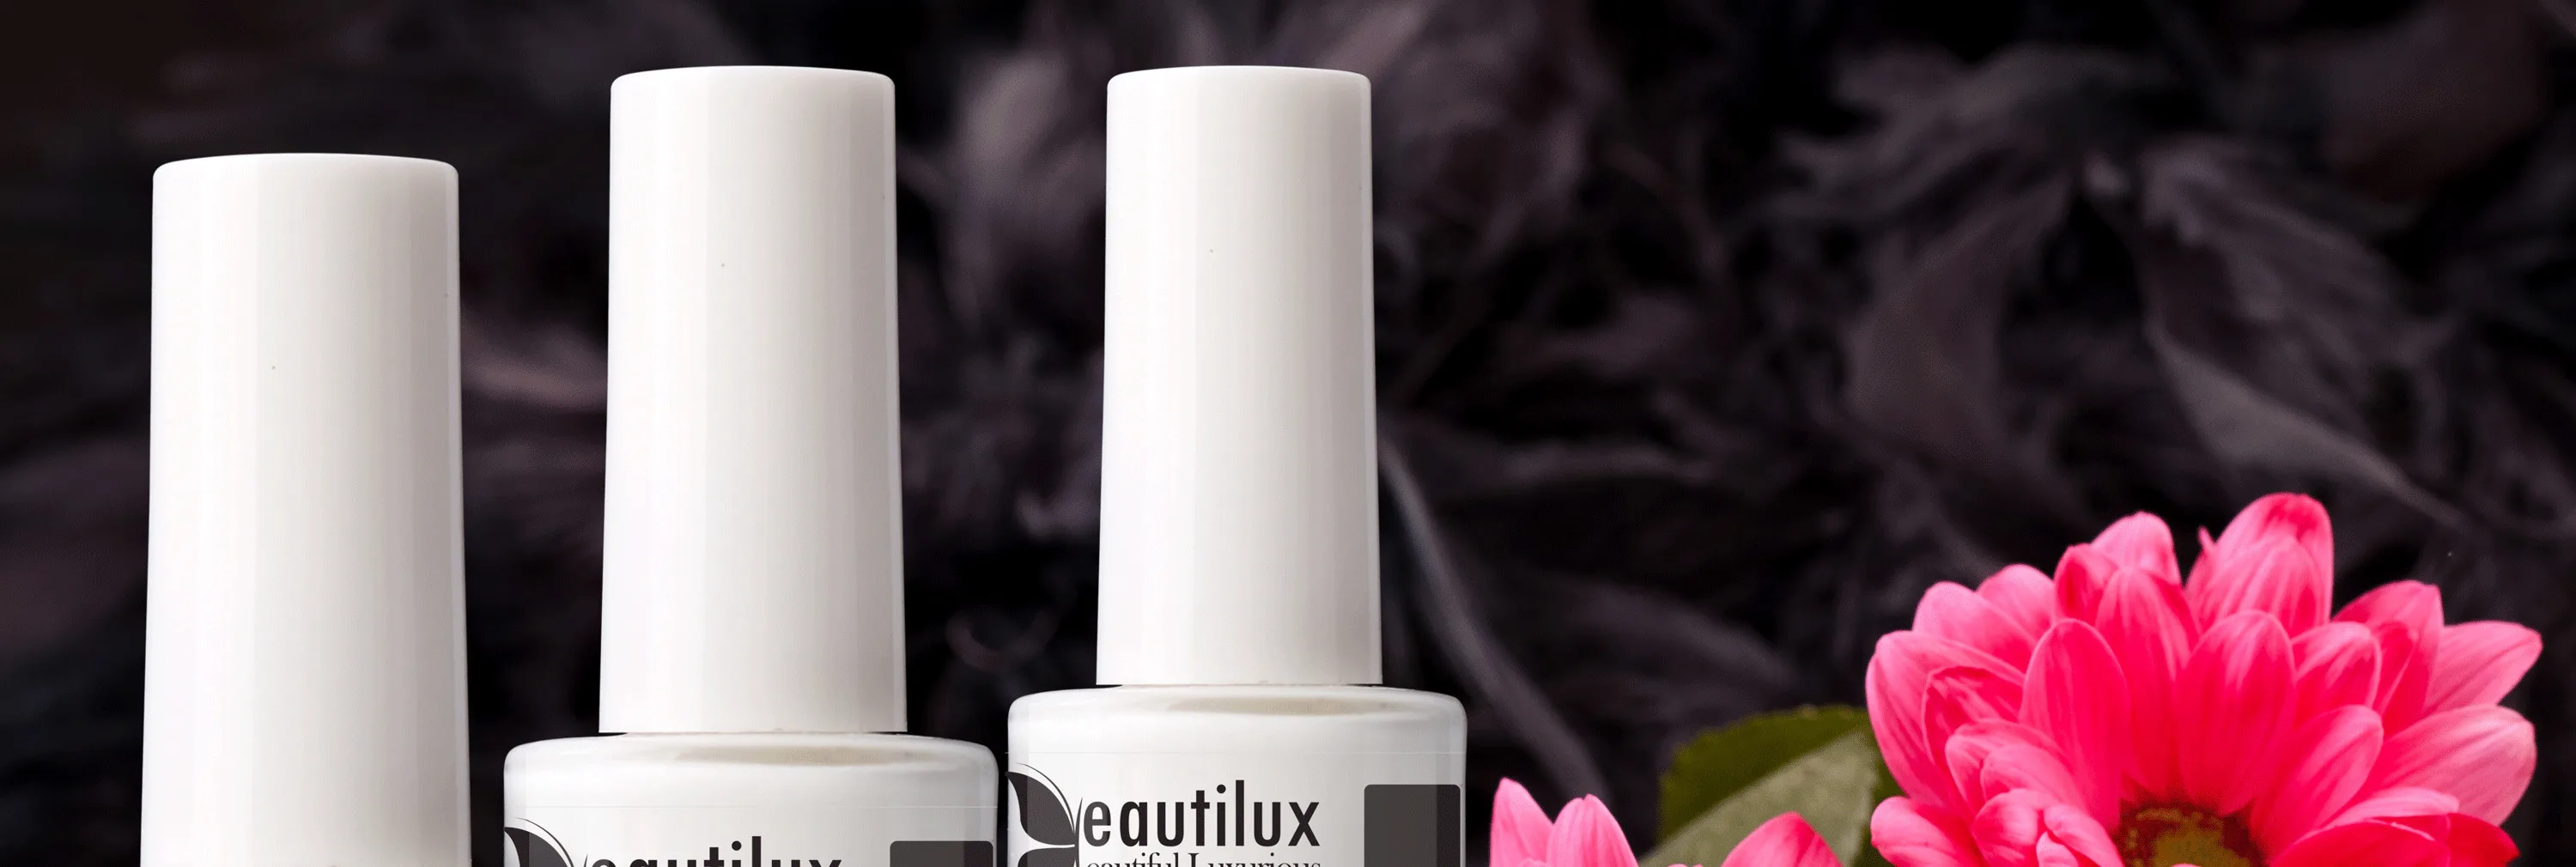 Beautilux антифризовая жидкая маска для ногтей защитная лента для кутикулы защита для ногтей латексный барьер 10 мл